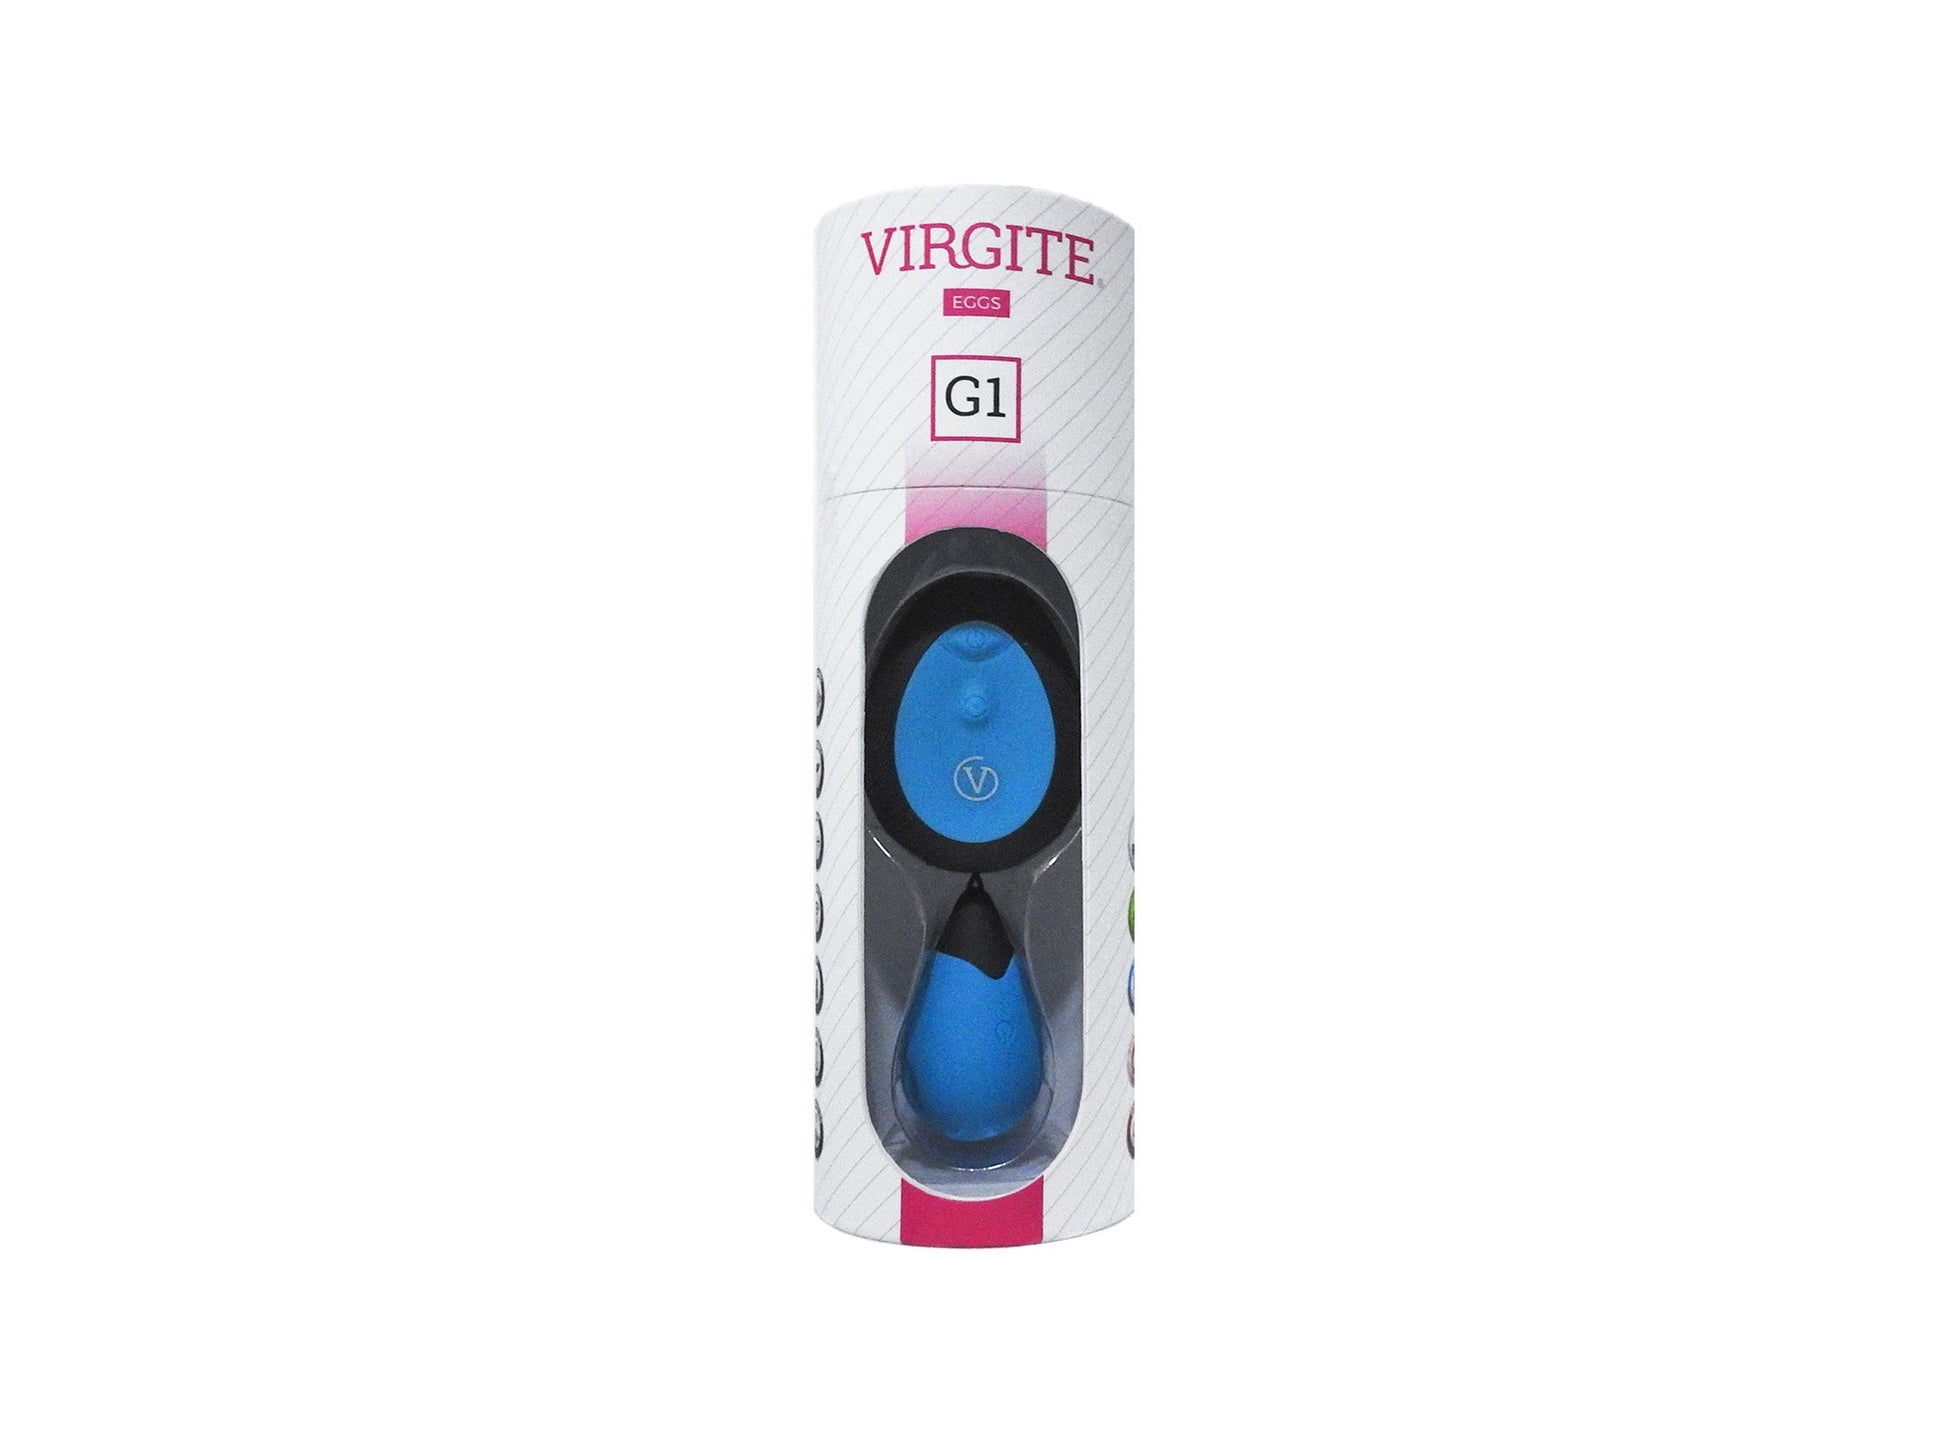 Virgite - Vibrerend Eitje Met Draadloze Afstandsbediening G1 - Blauw